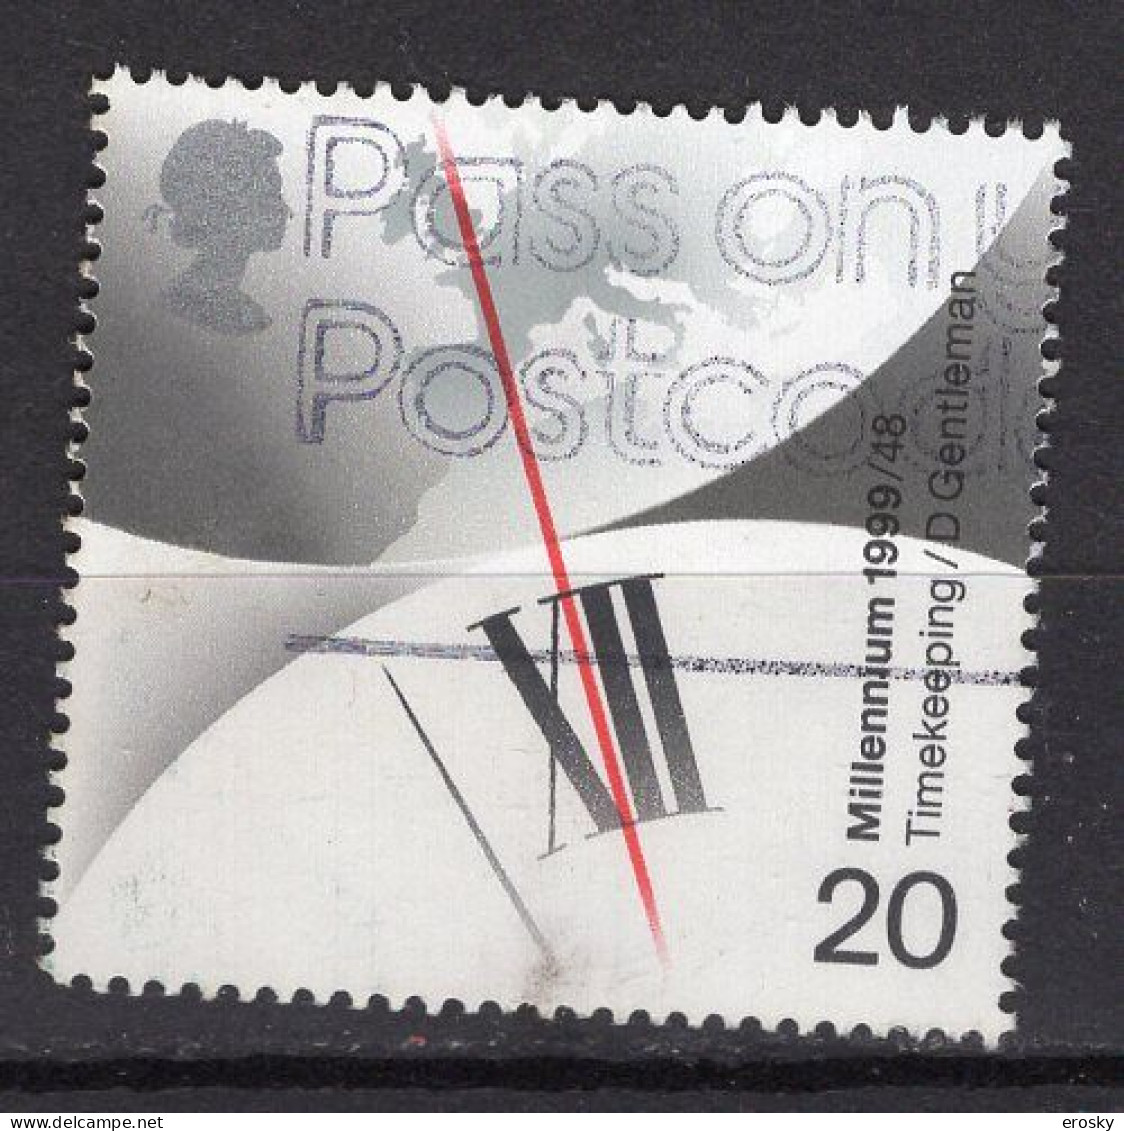 P1768 - GRANDE BRETAGNE Yv N°2066 - Used Stamps